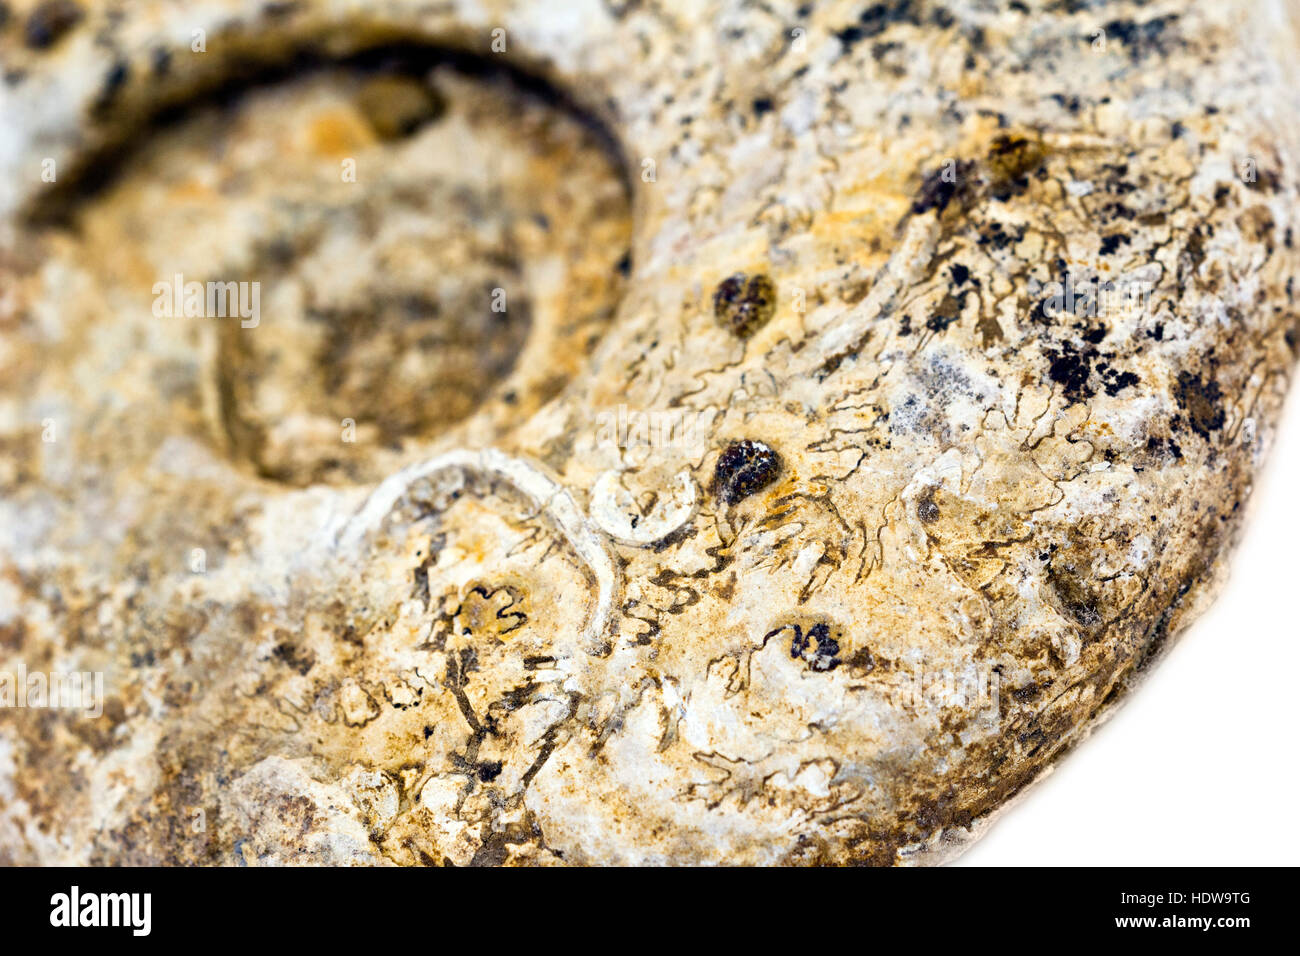 Close-up de un fósil de ammonites mostrando líneas de sutura ammonitic Foto de stock